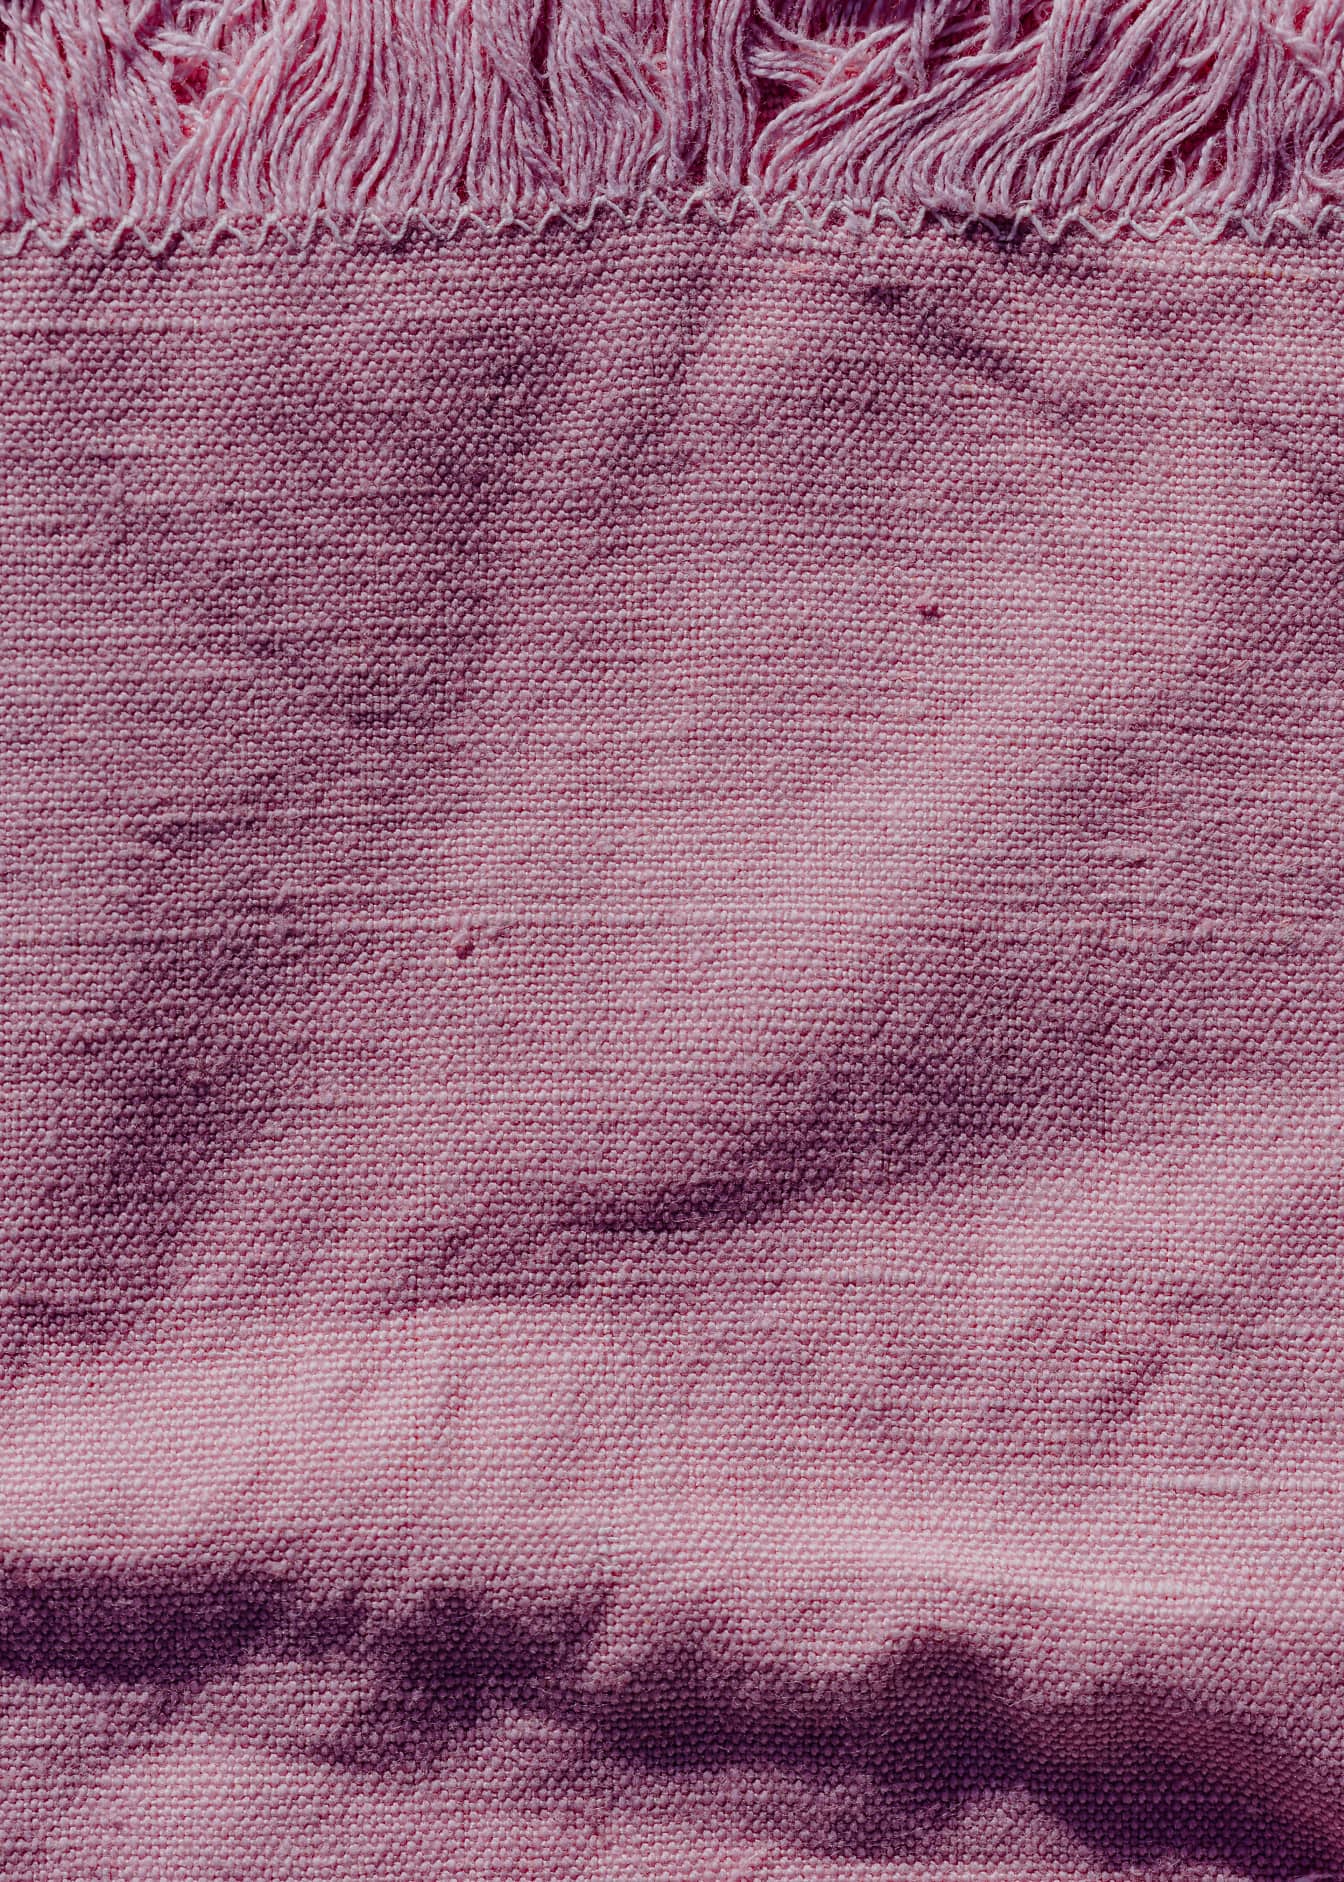 Textur eines rauen Leinenstoffs rosafarben mit Fransen am Rand